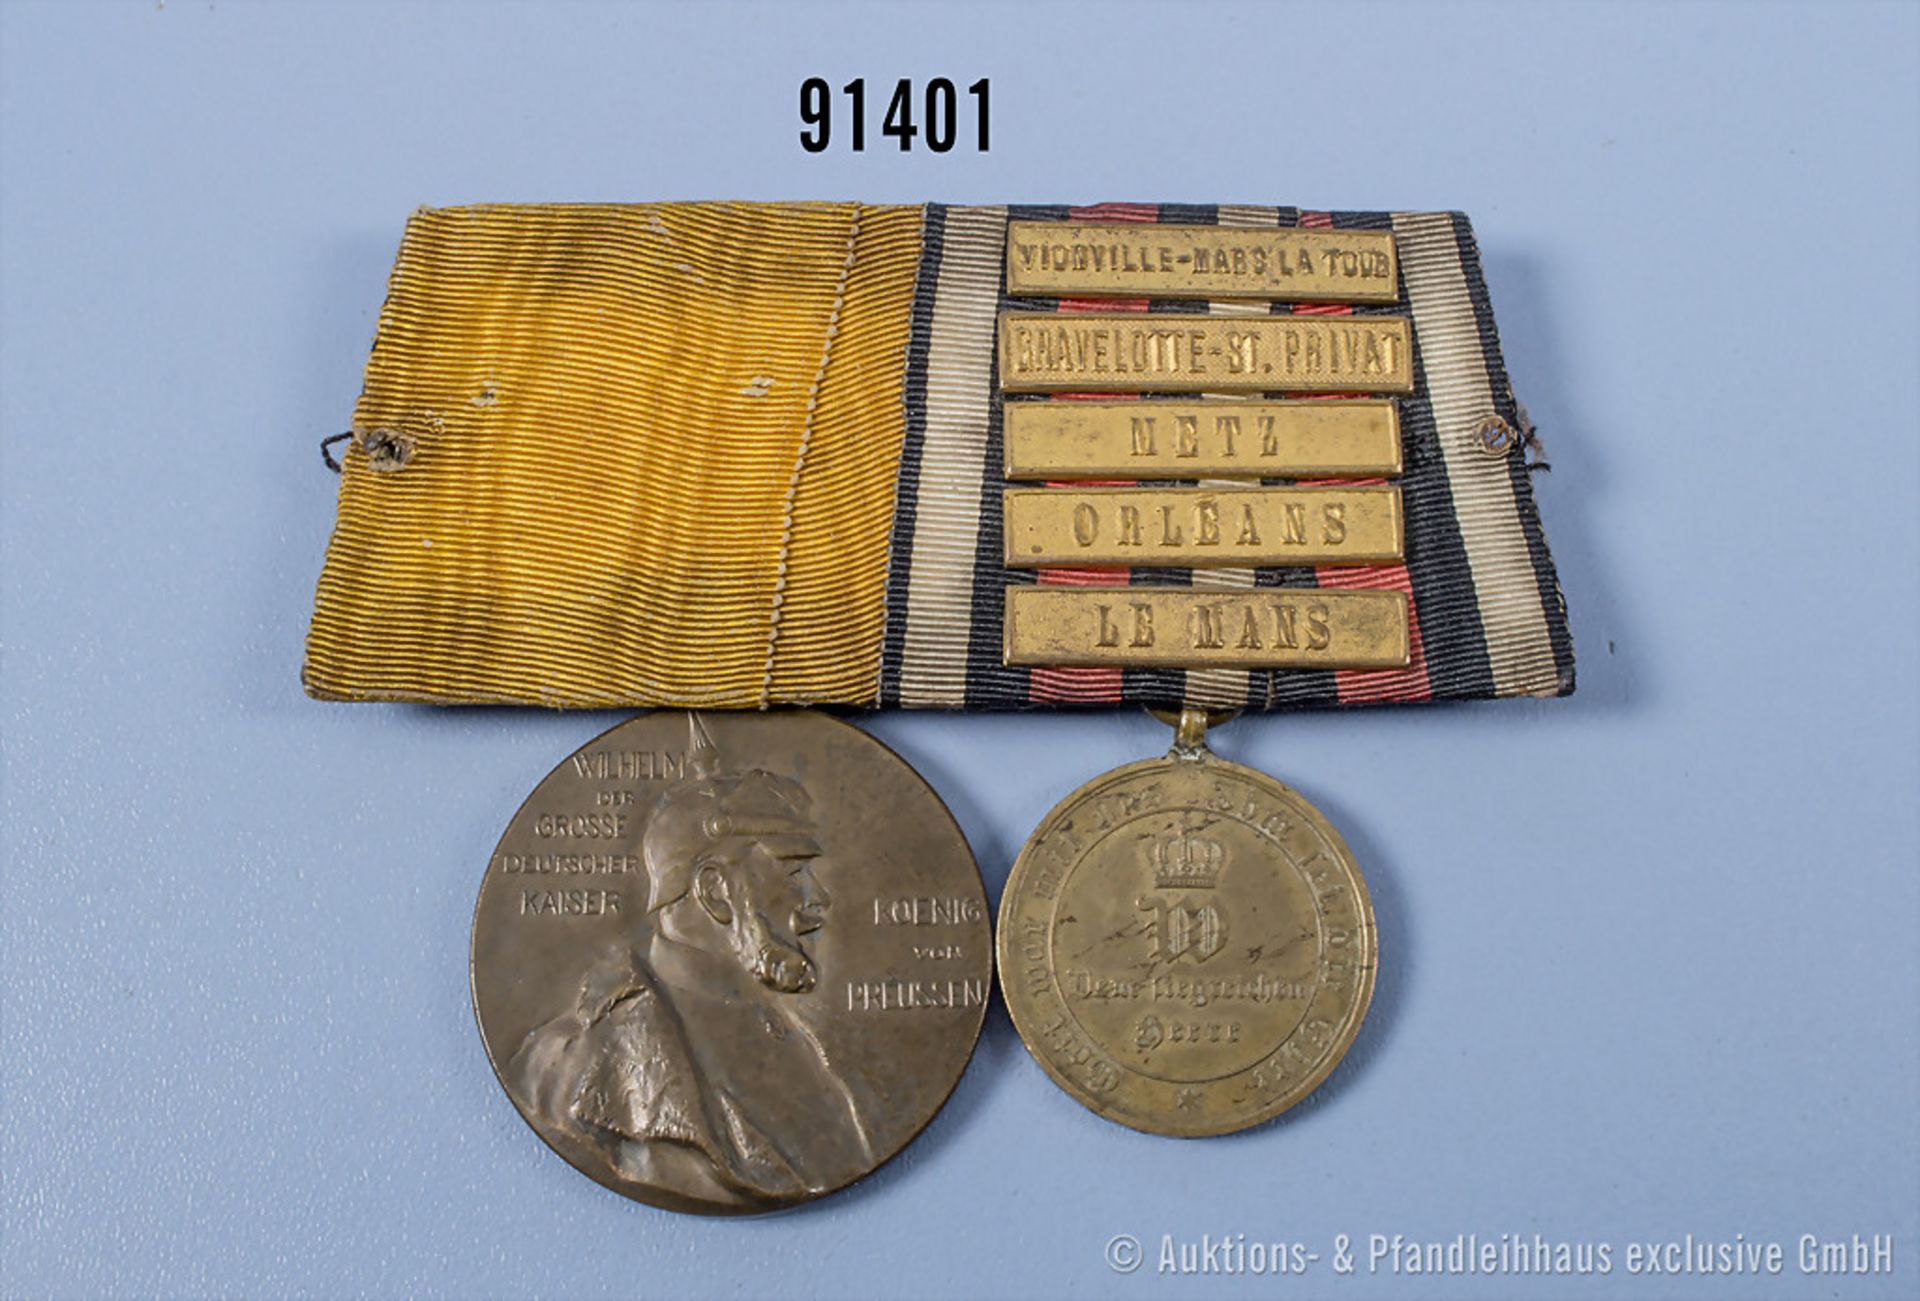 2er Ordenspange Centenarmedaille und KDM 1870/71 mit 5 Gefechtsspangen "Vionville-Marsa ...